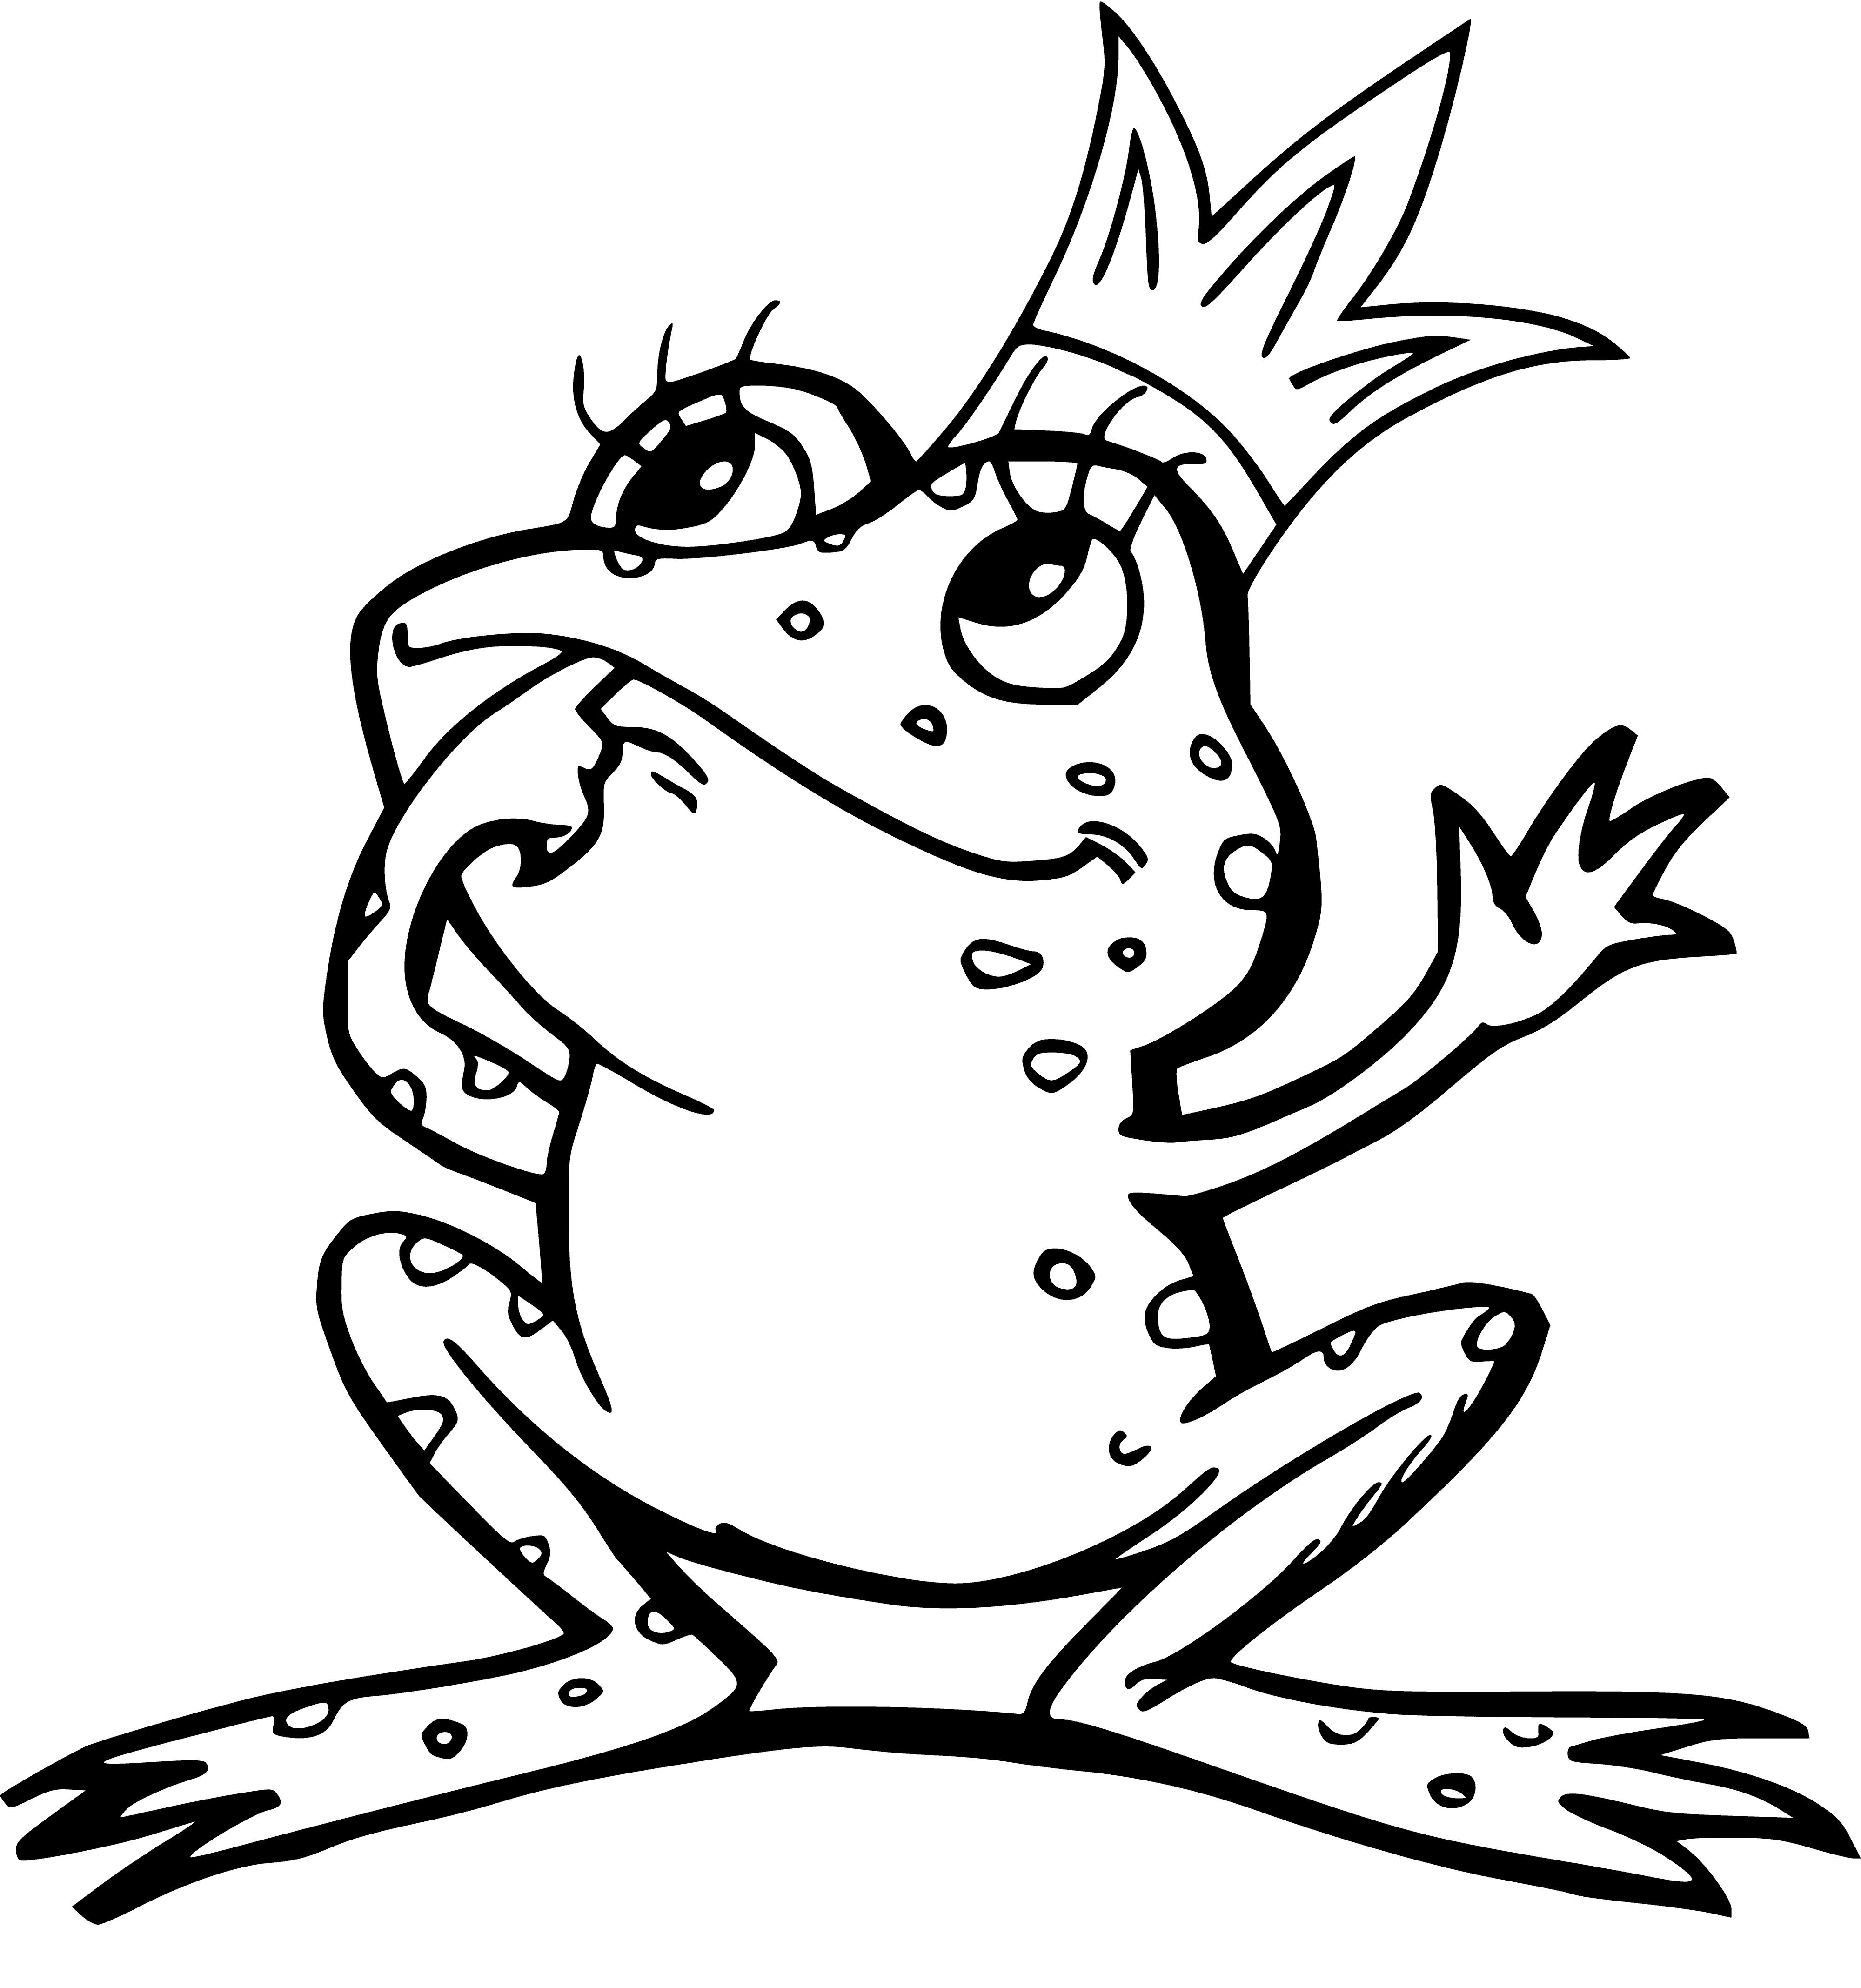 Princess Frog coloring page